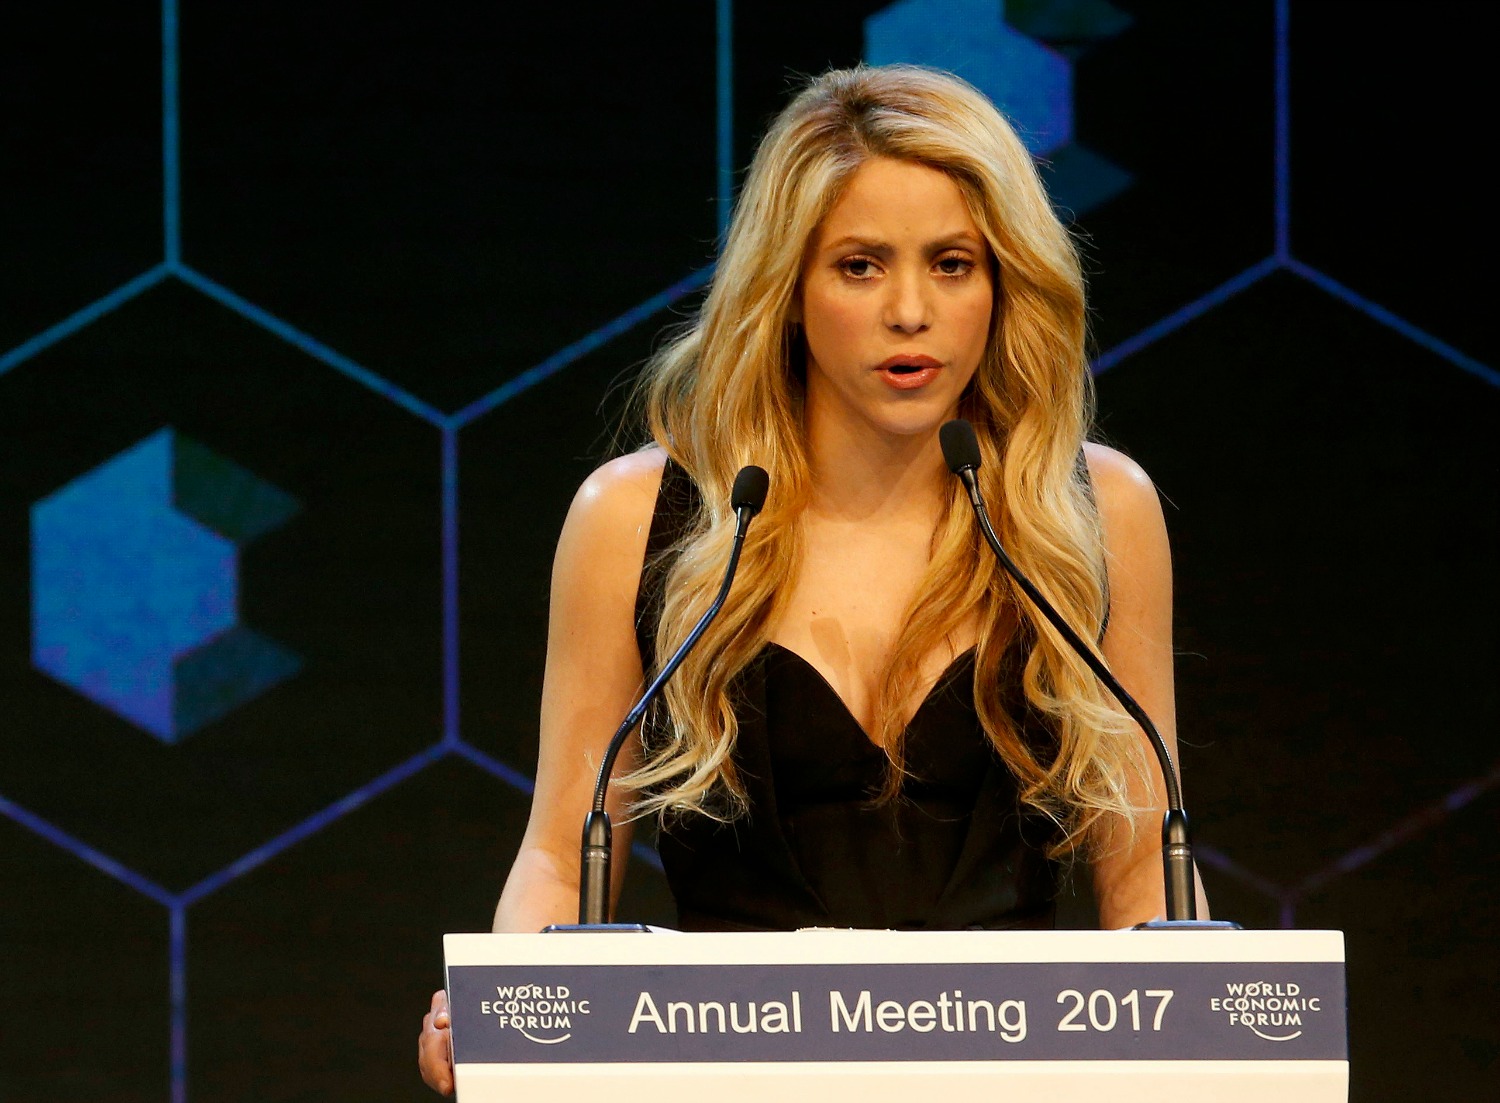 La cantante Shakira recibe el reconocimiento a su labor a favor de la infancia (Foto: Ruben Sprich / Reuters)